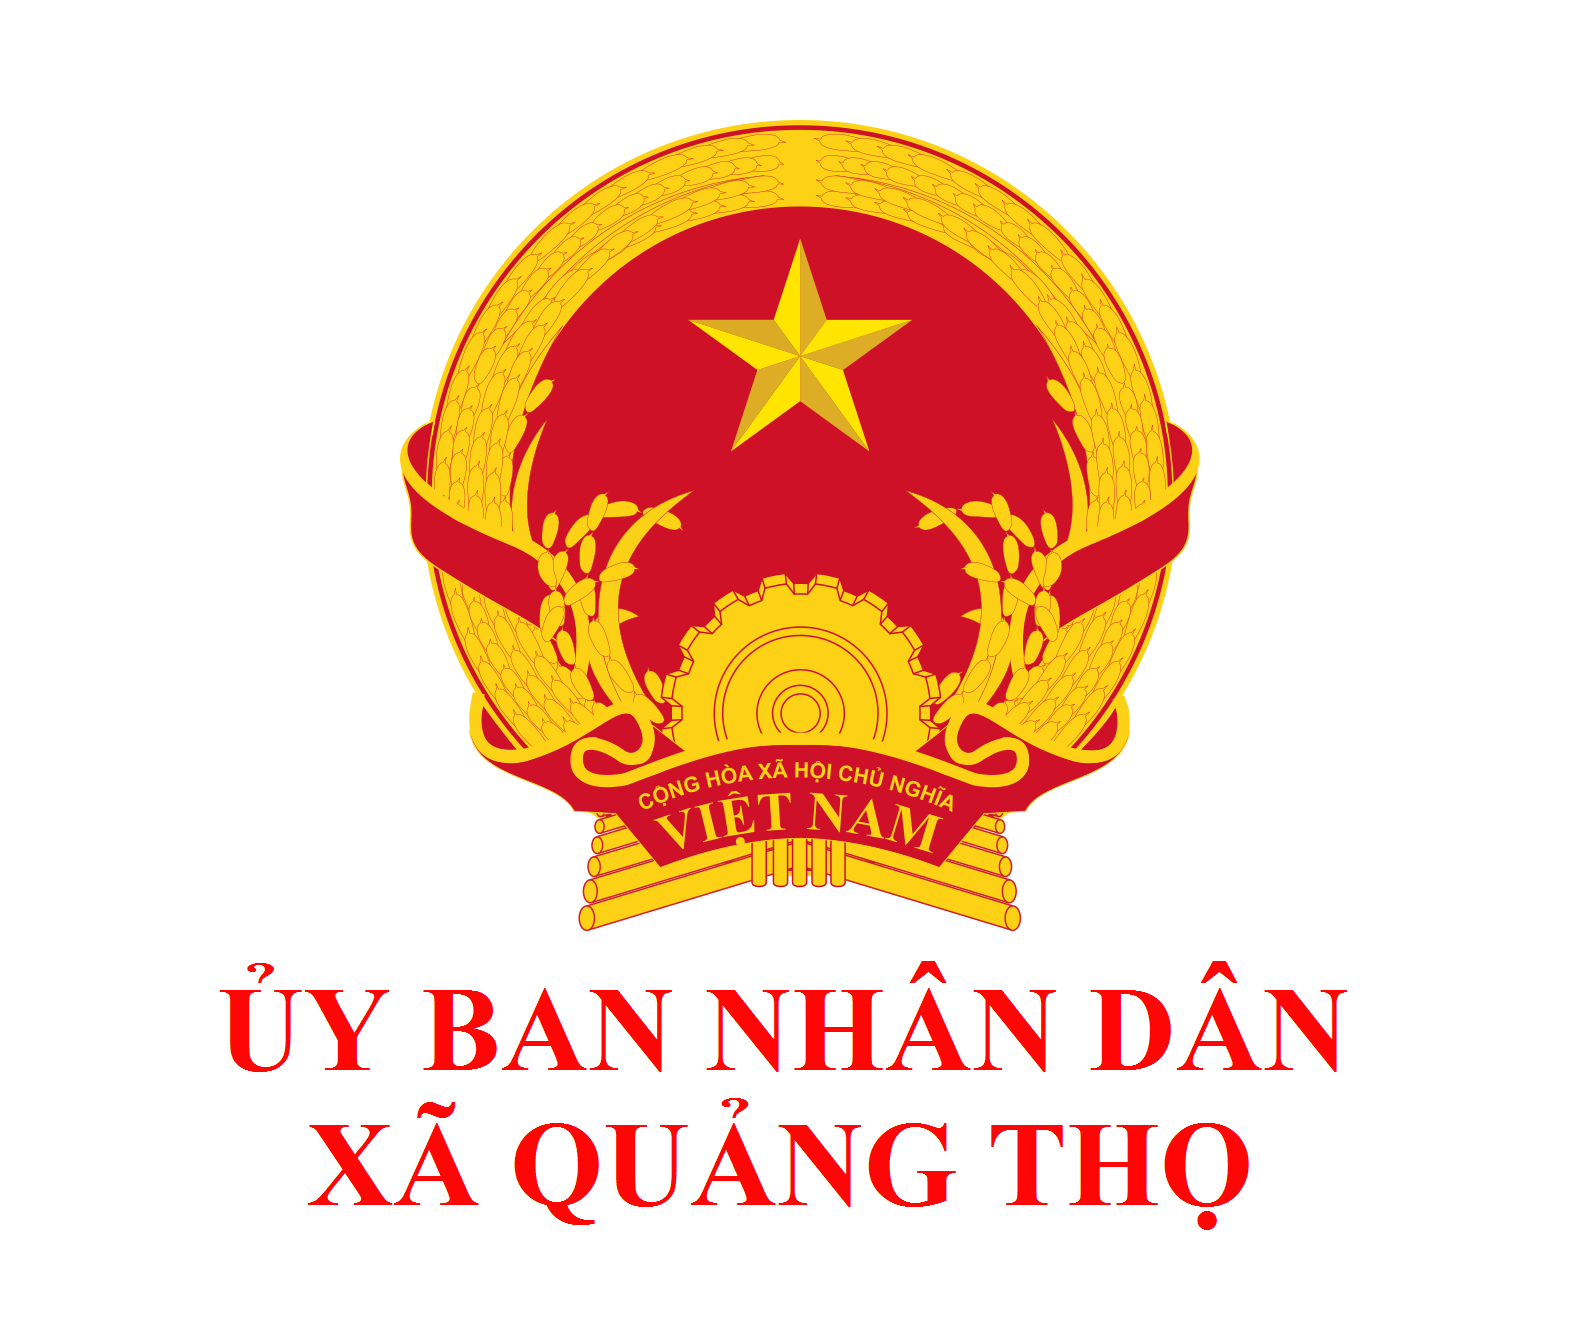 Quản lý chất lượng theo tiêu chuẩn Việt Nam: Năm 2024, sự chú trọng đến quản lý chất lượng theo tiêu chuẩn Việt Nam đã giúp nâng cao năng suất và đảm bảo sự cạnh tranh trong kinh doanh. Các doanh nghiệp tuân thủ tiêu chuẩn này đem lại niềm tin về chất lượng và sự uy tín từ phía khách hàng.